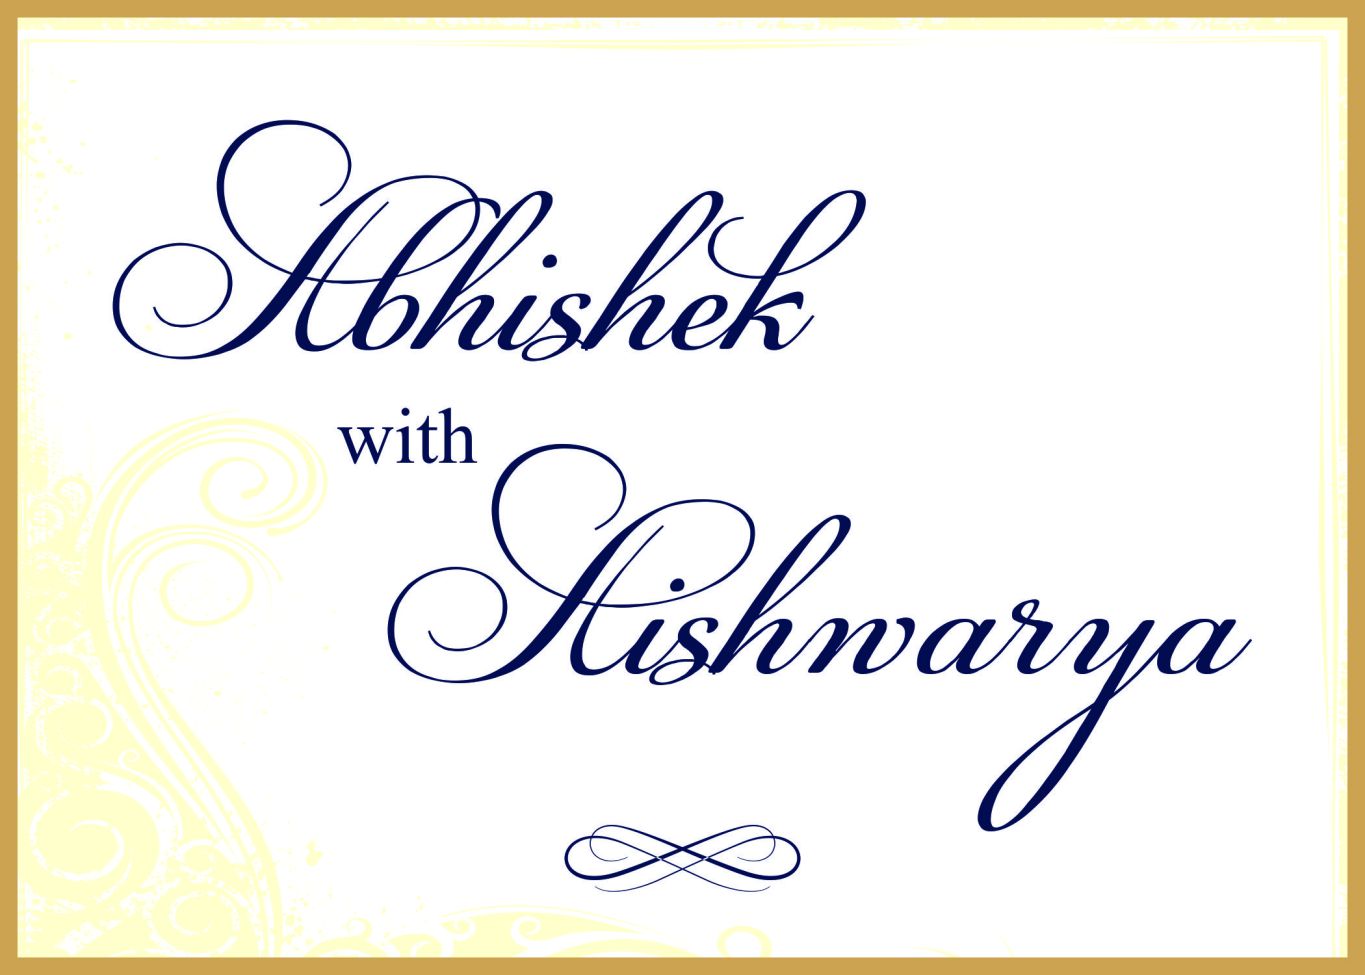 aishwarya abhishek wedding card